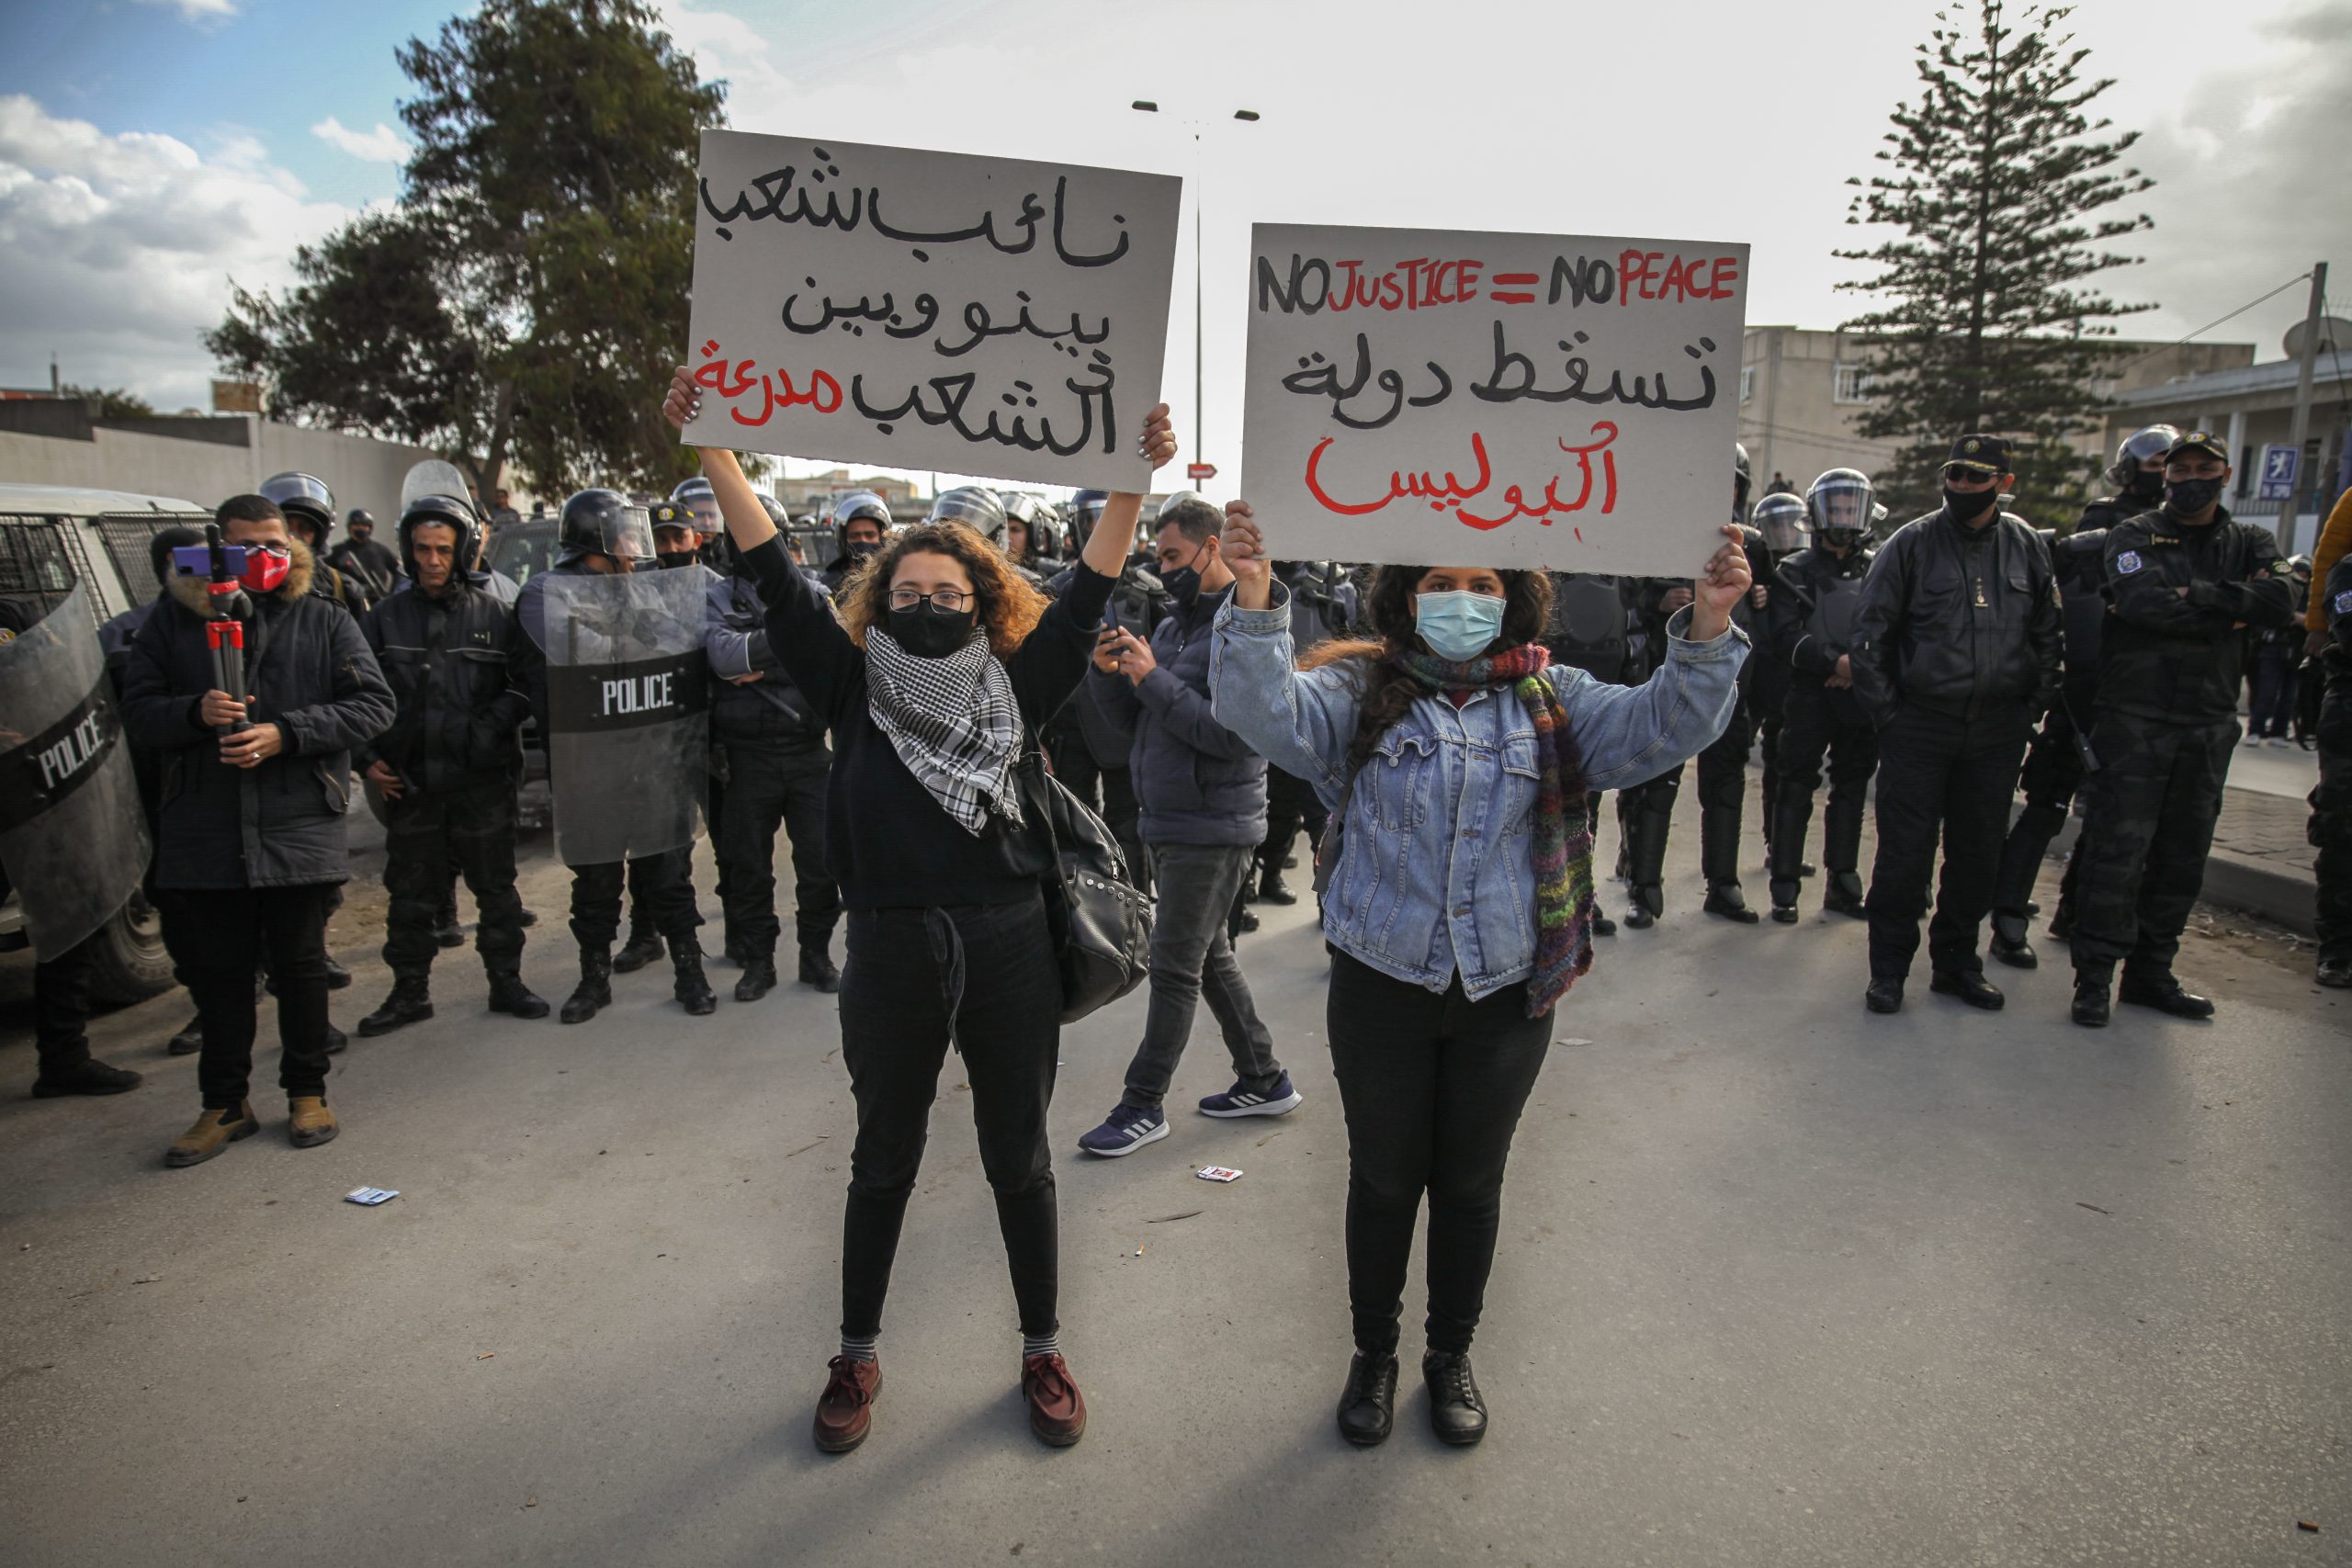 Arab Spring Tunisia